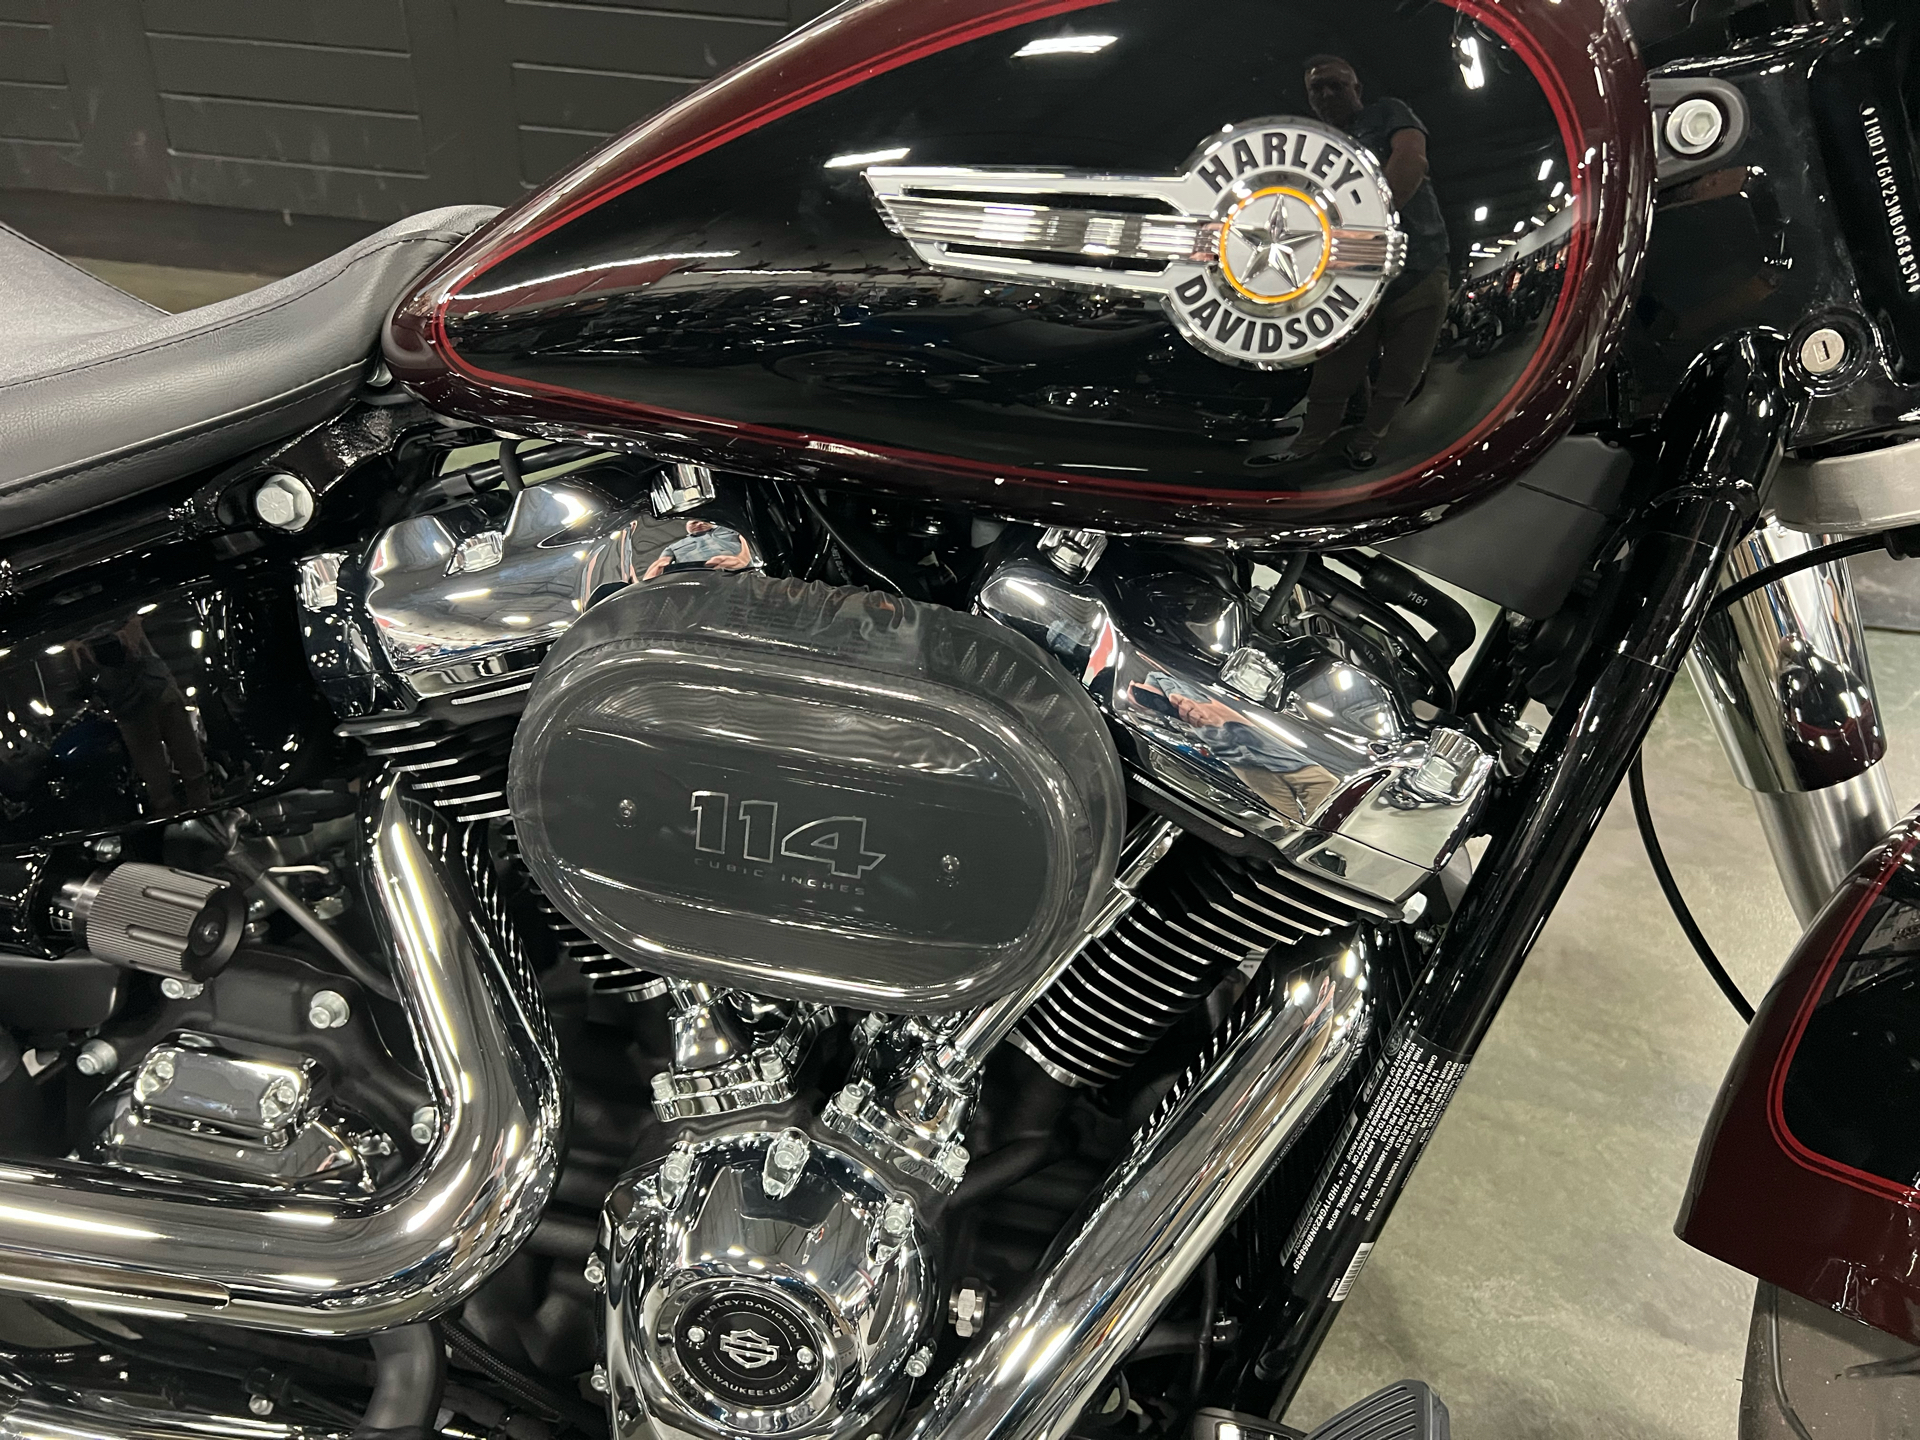 2022 Harley-Davidson Fat Boy® 114 in San Jose, California - Photo 4